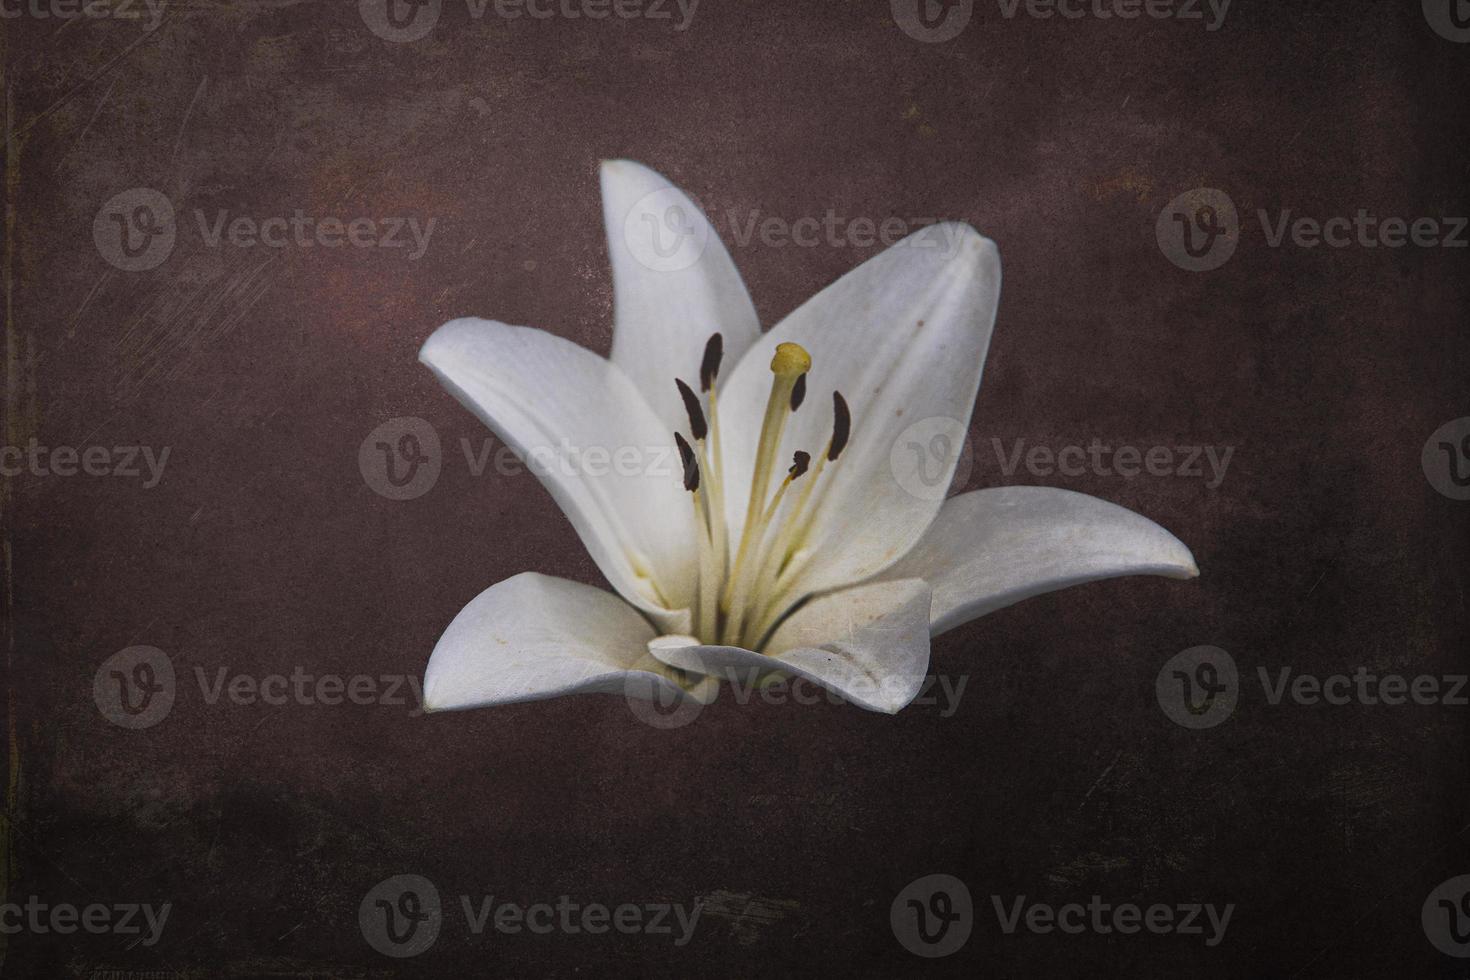 blanc délicat lis fleur sur foncé Contexte photo